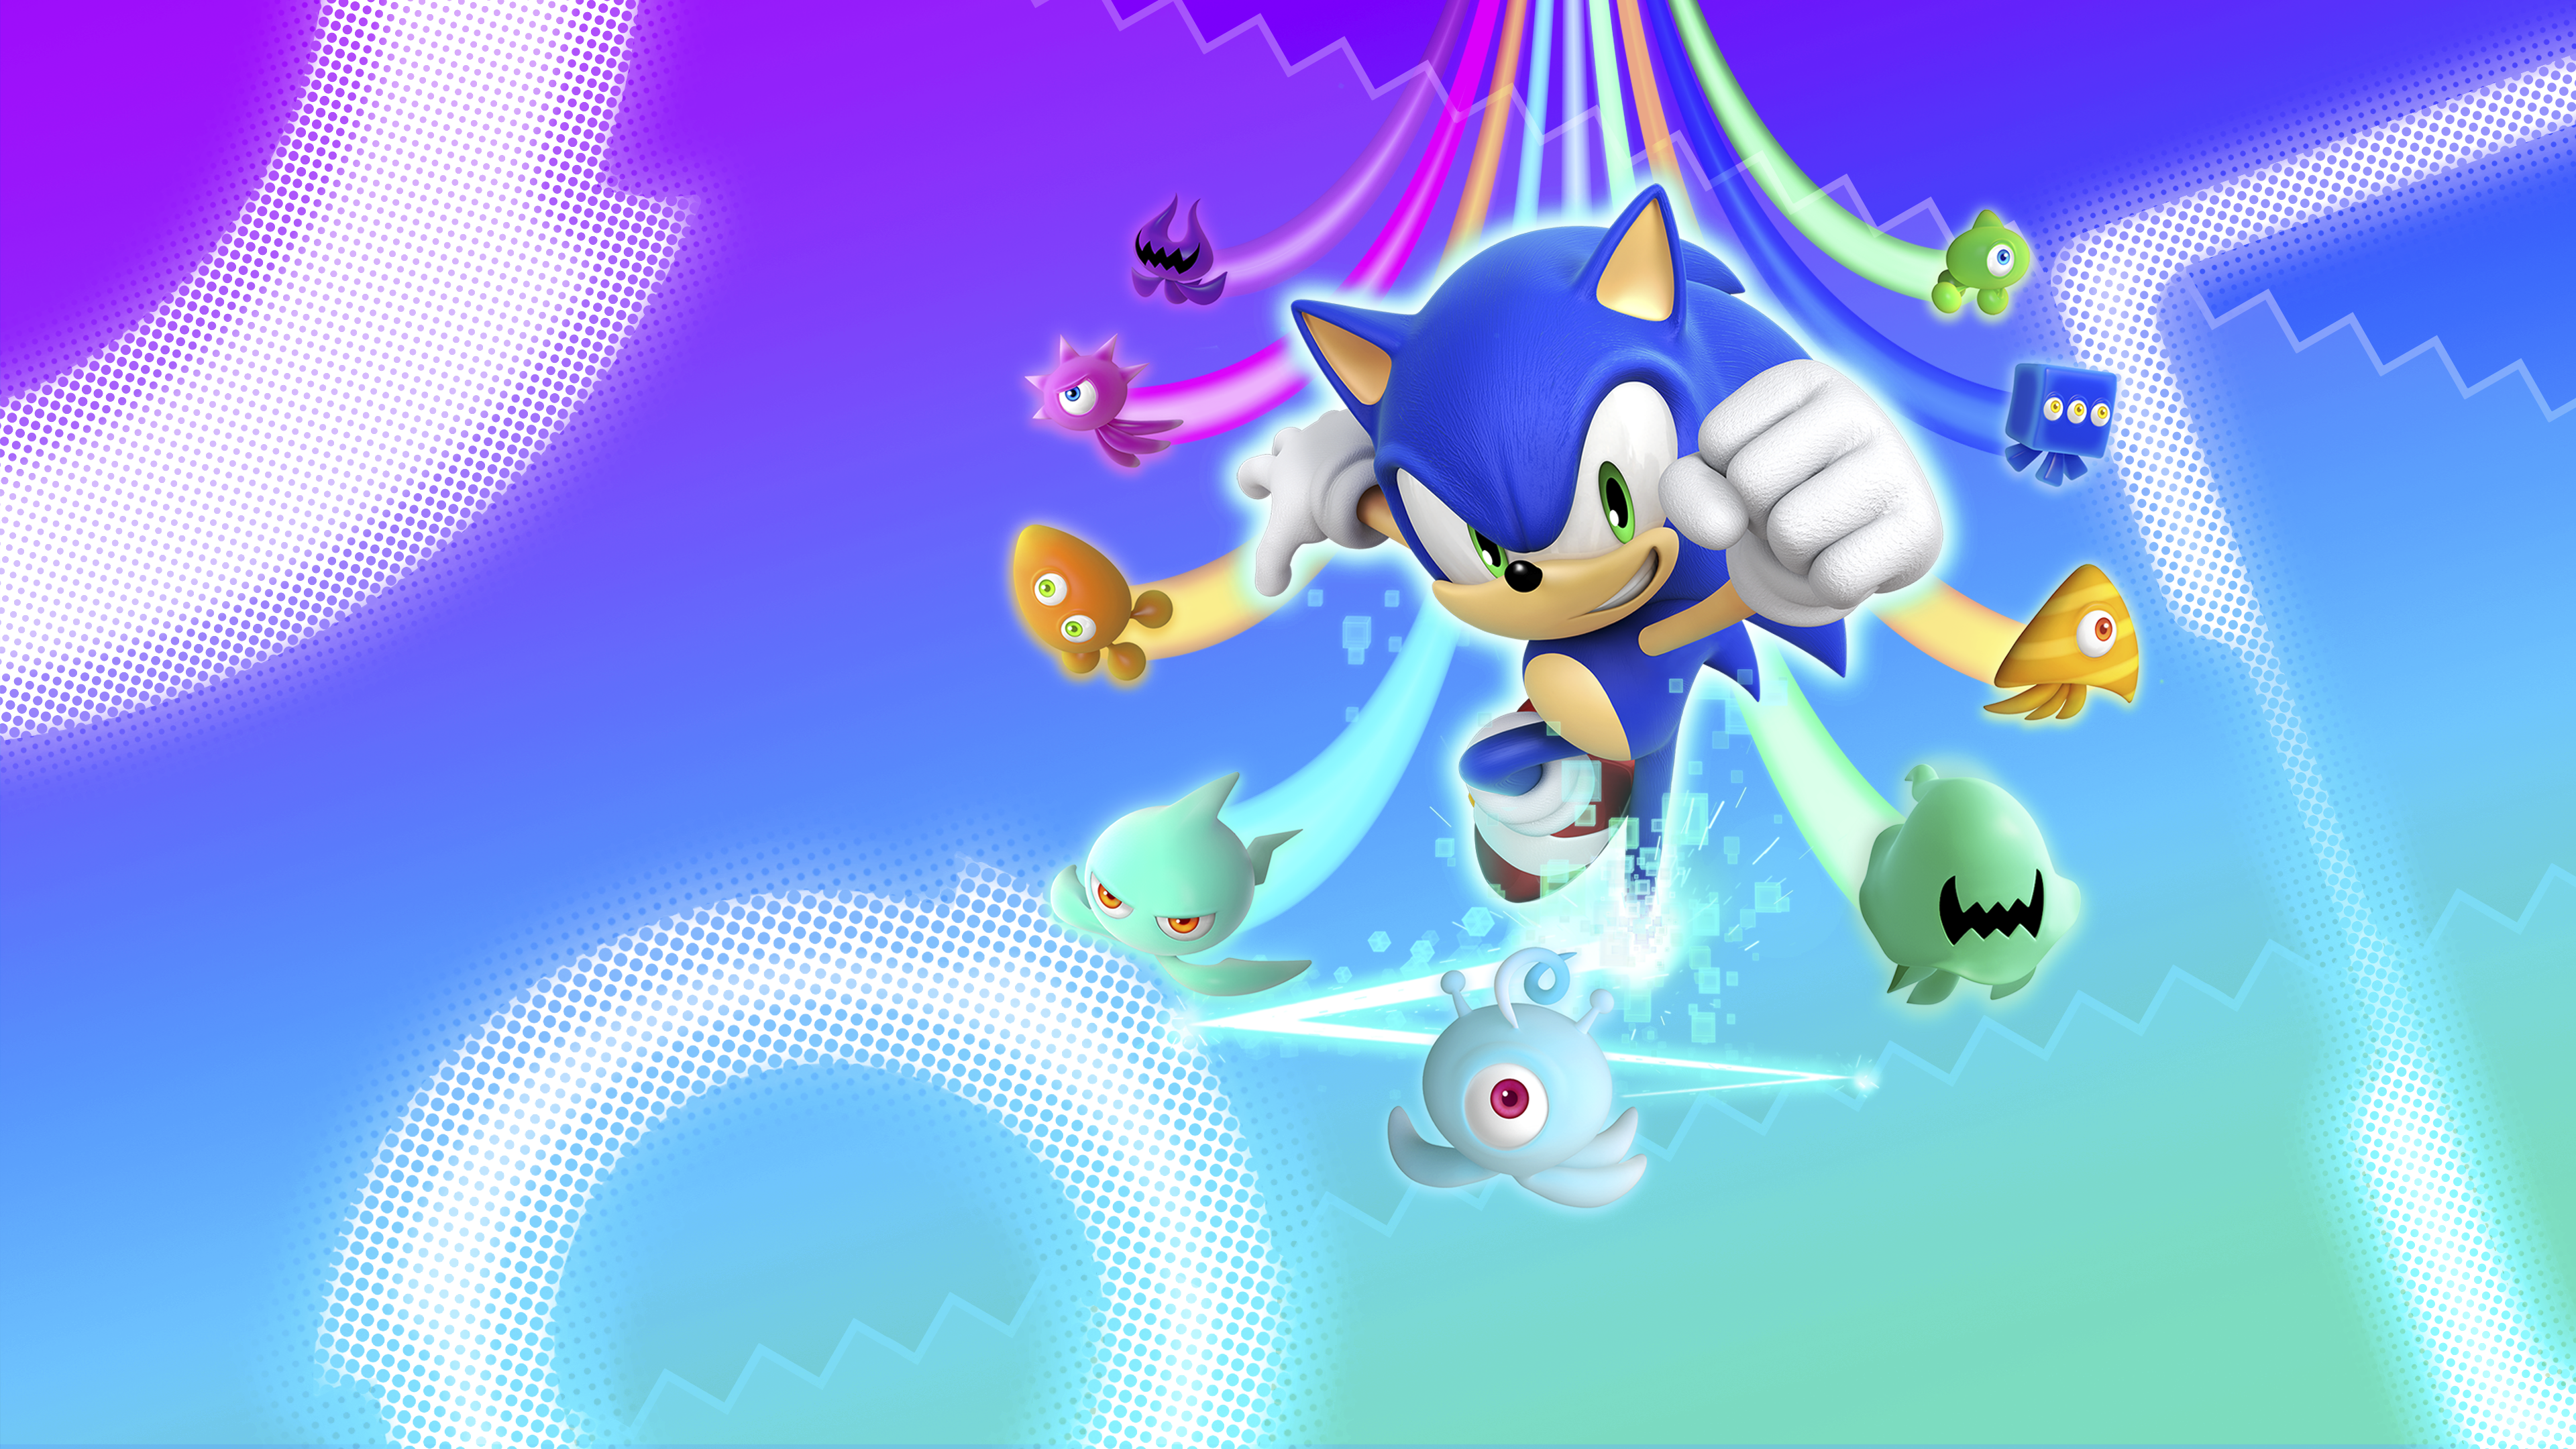 Sonic Colors: Ultimate hero artwork